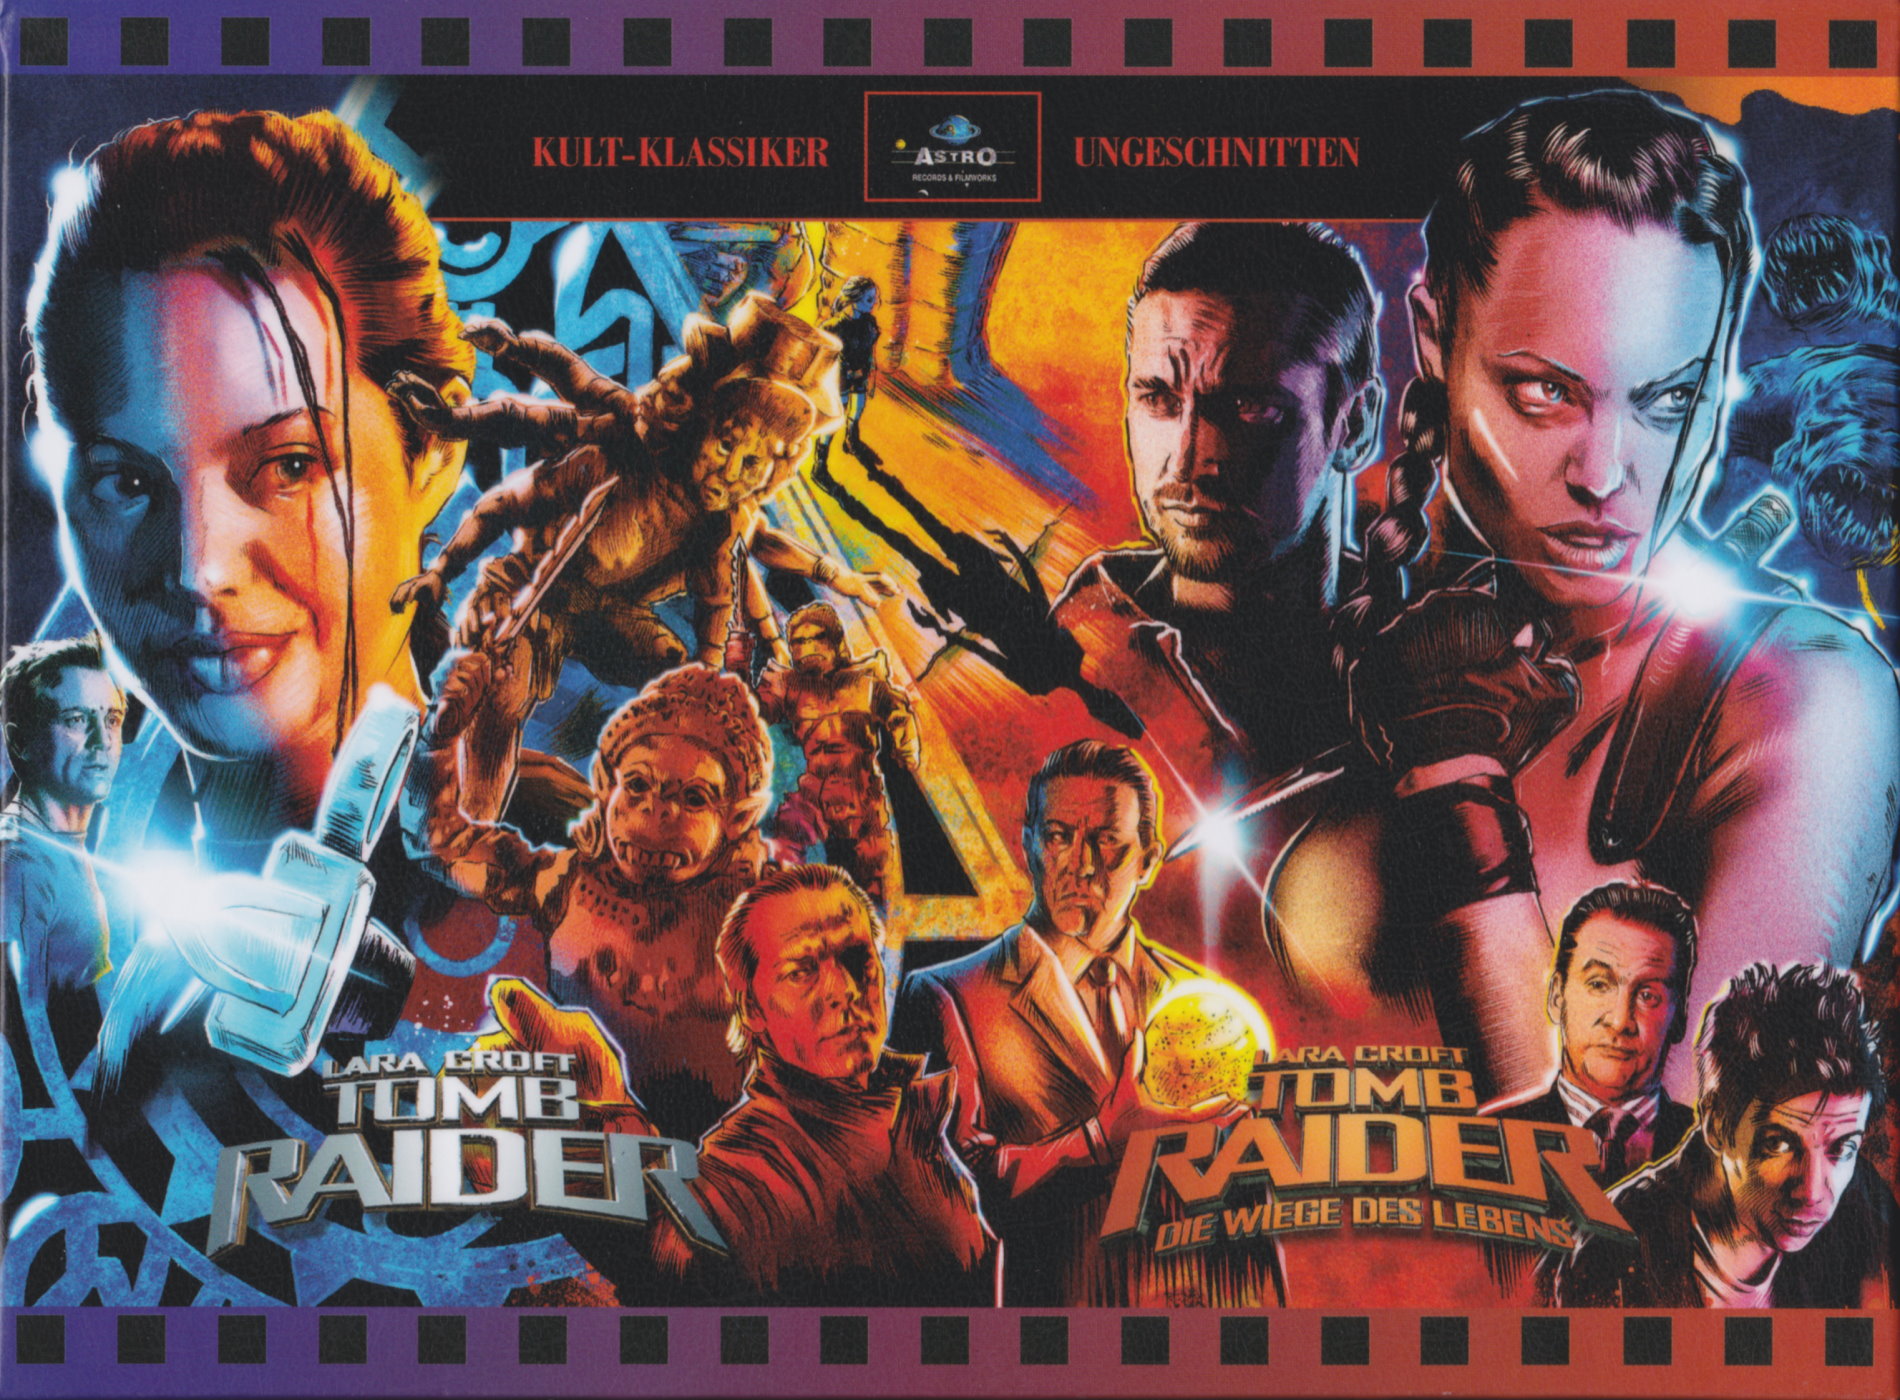 Cover - Tomb Raider - Die Wiege des Lebens.jpg